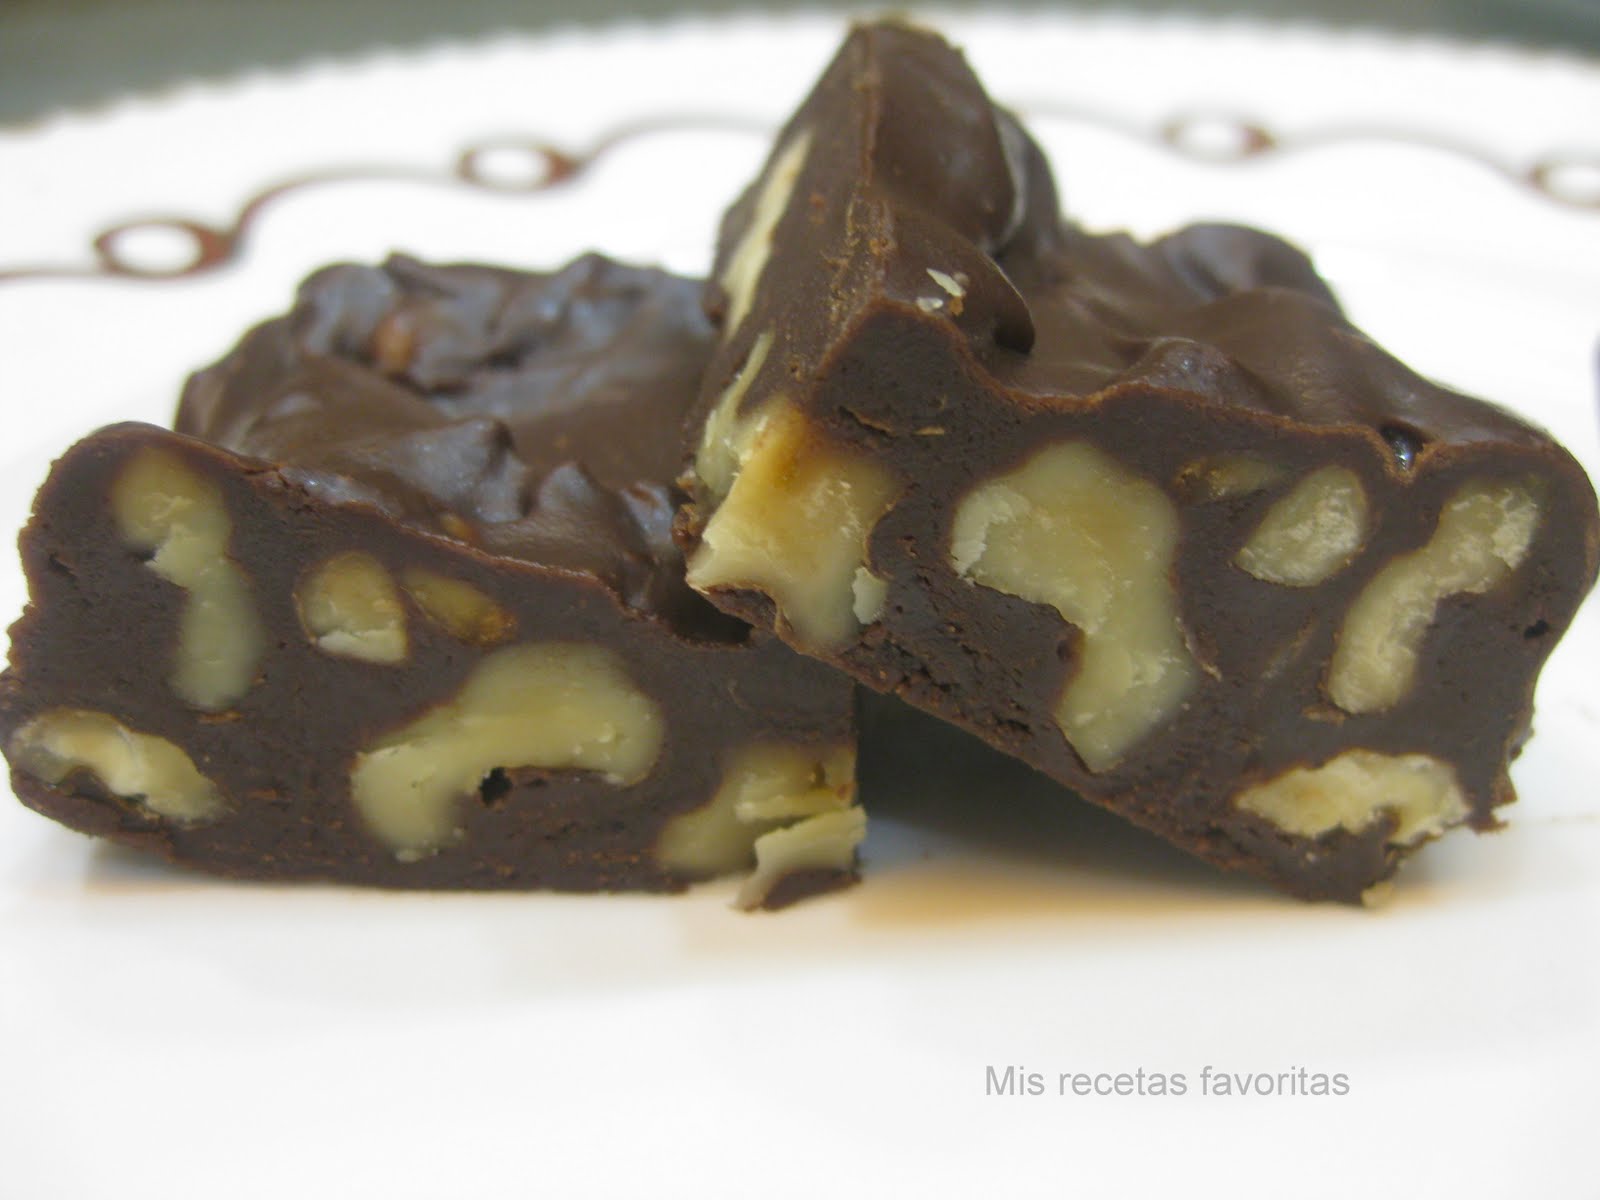 Cuadritos de fudge de chocolate y nueces - Mis recetas favoritas by Hilmar